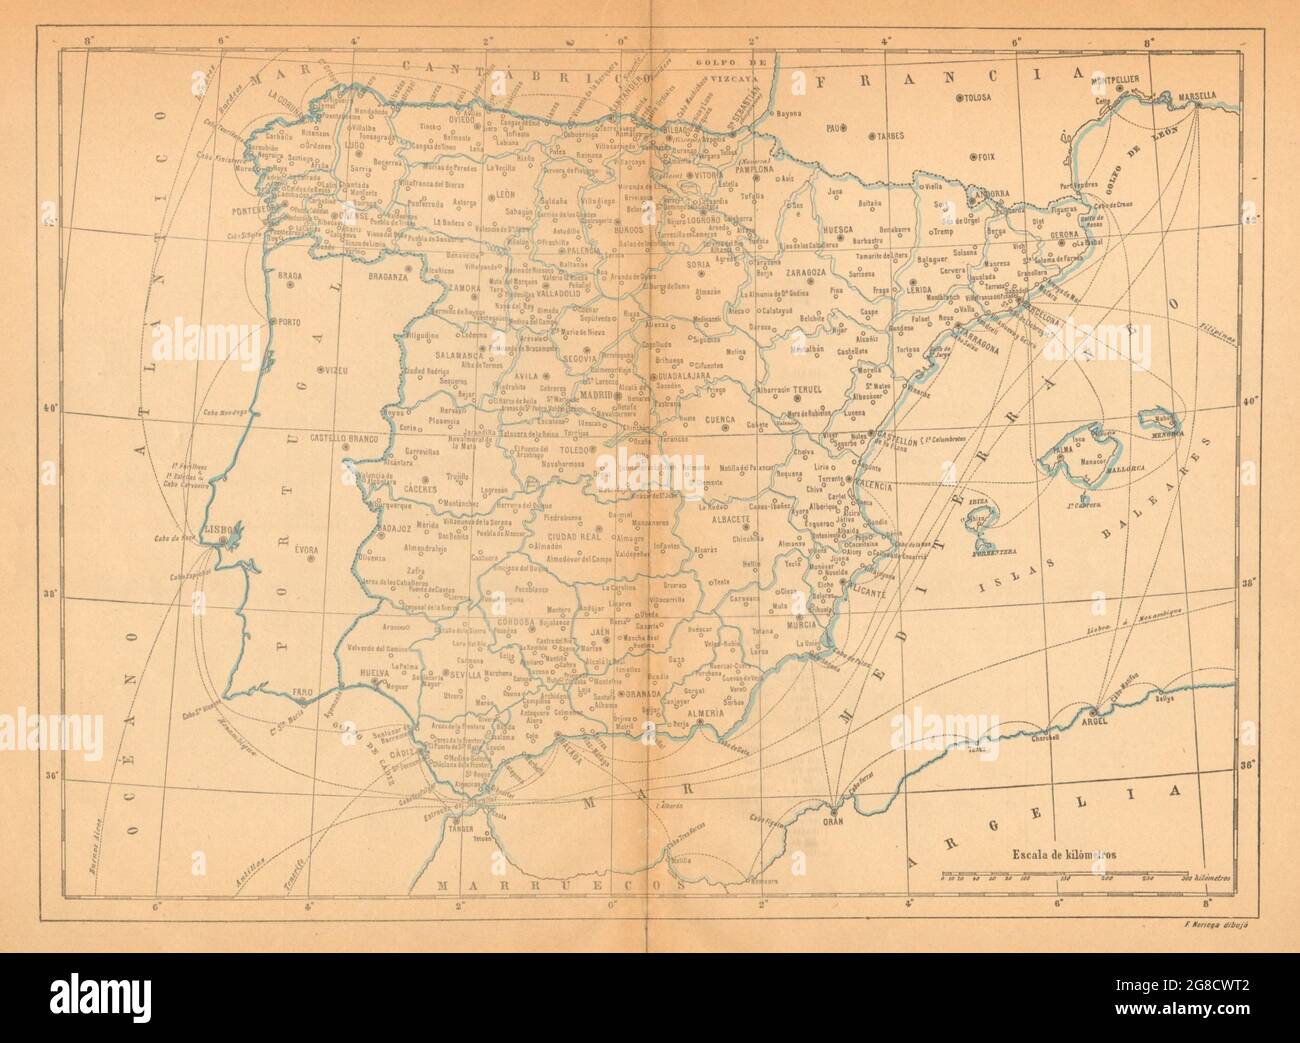 SPAIN ESPAÑA. Mapa antiguo 1914 old antique vintage plan chart Stock Photo